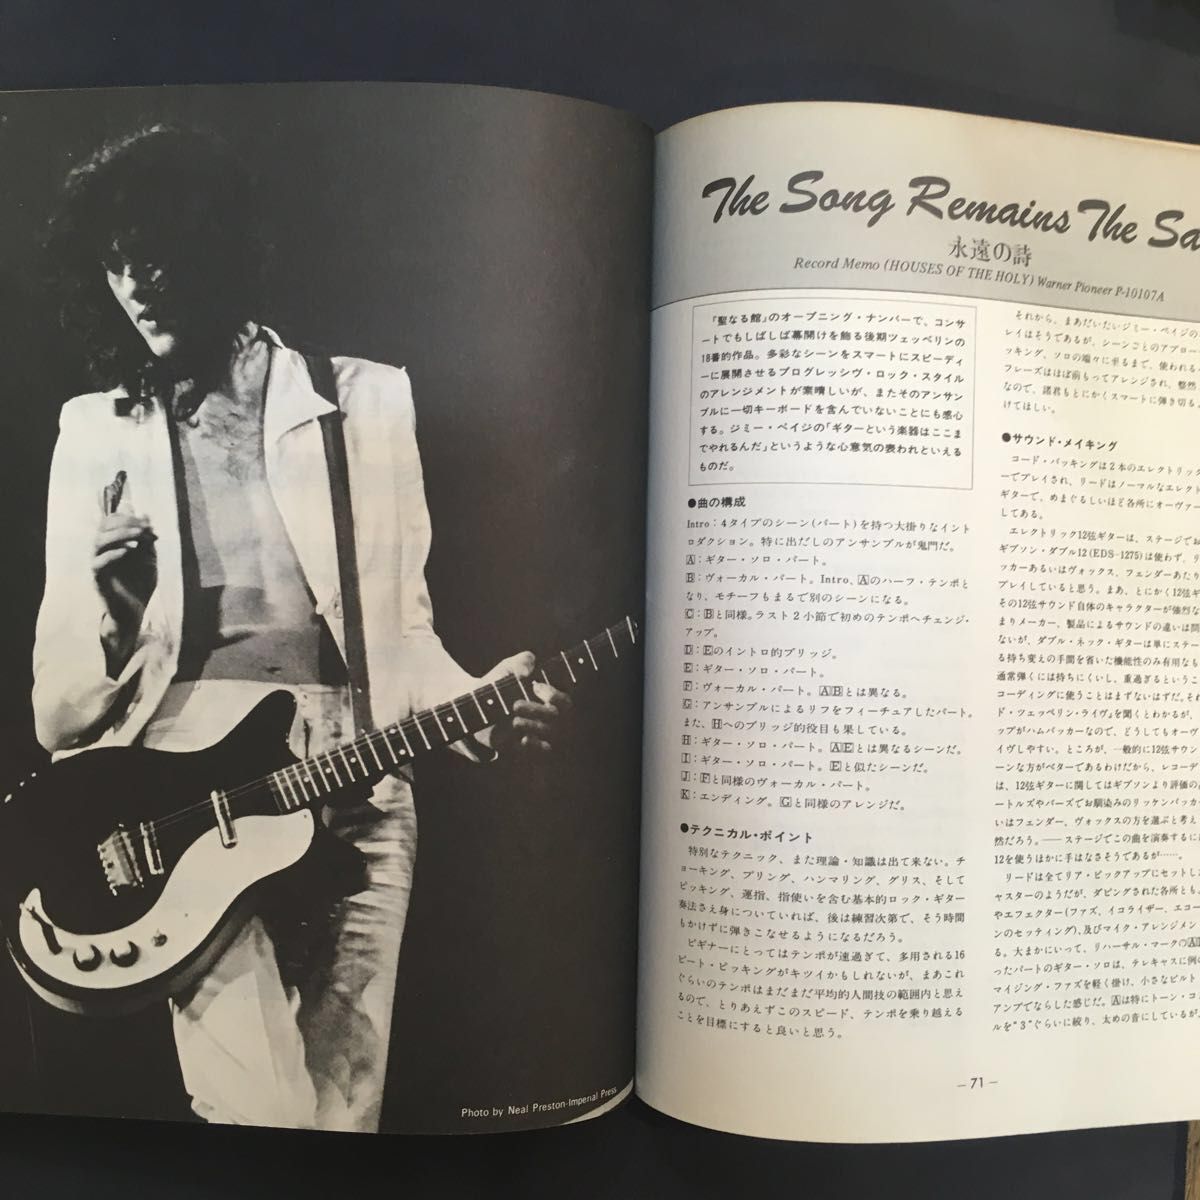 Jimmy Page ジミー・ペイジ Vol.2 ギタースコア